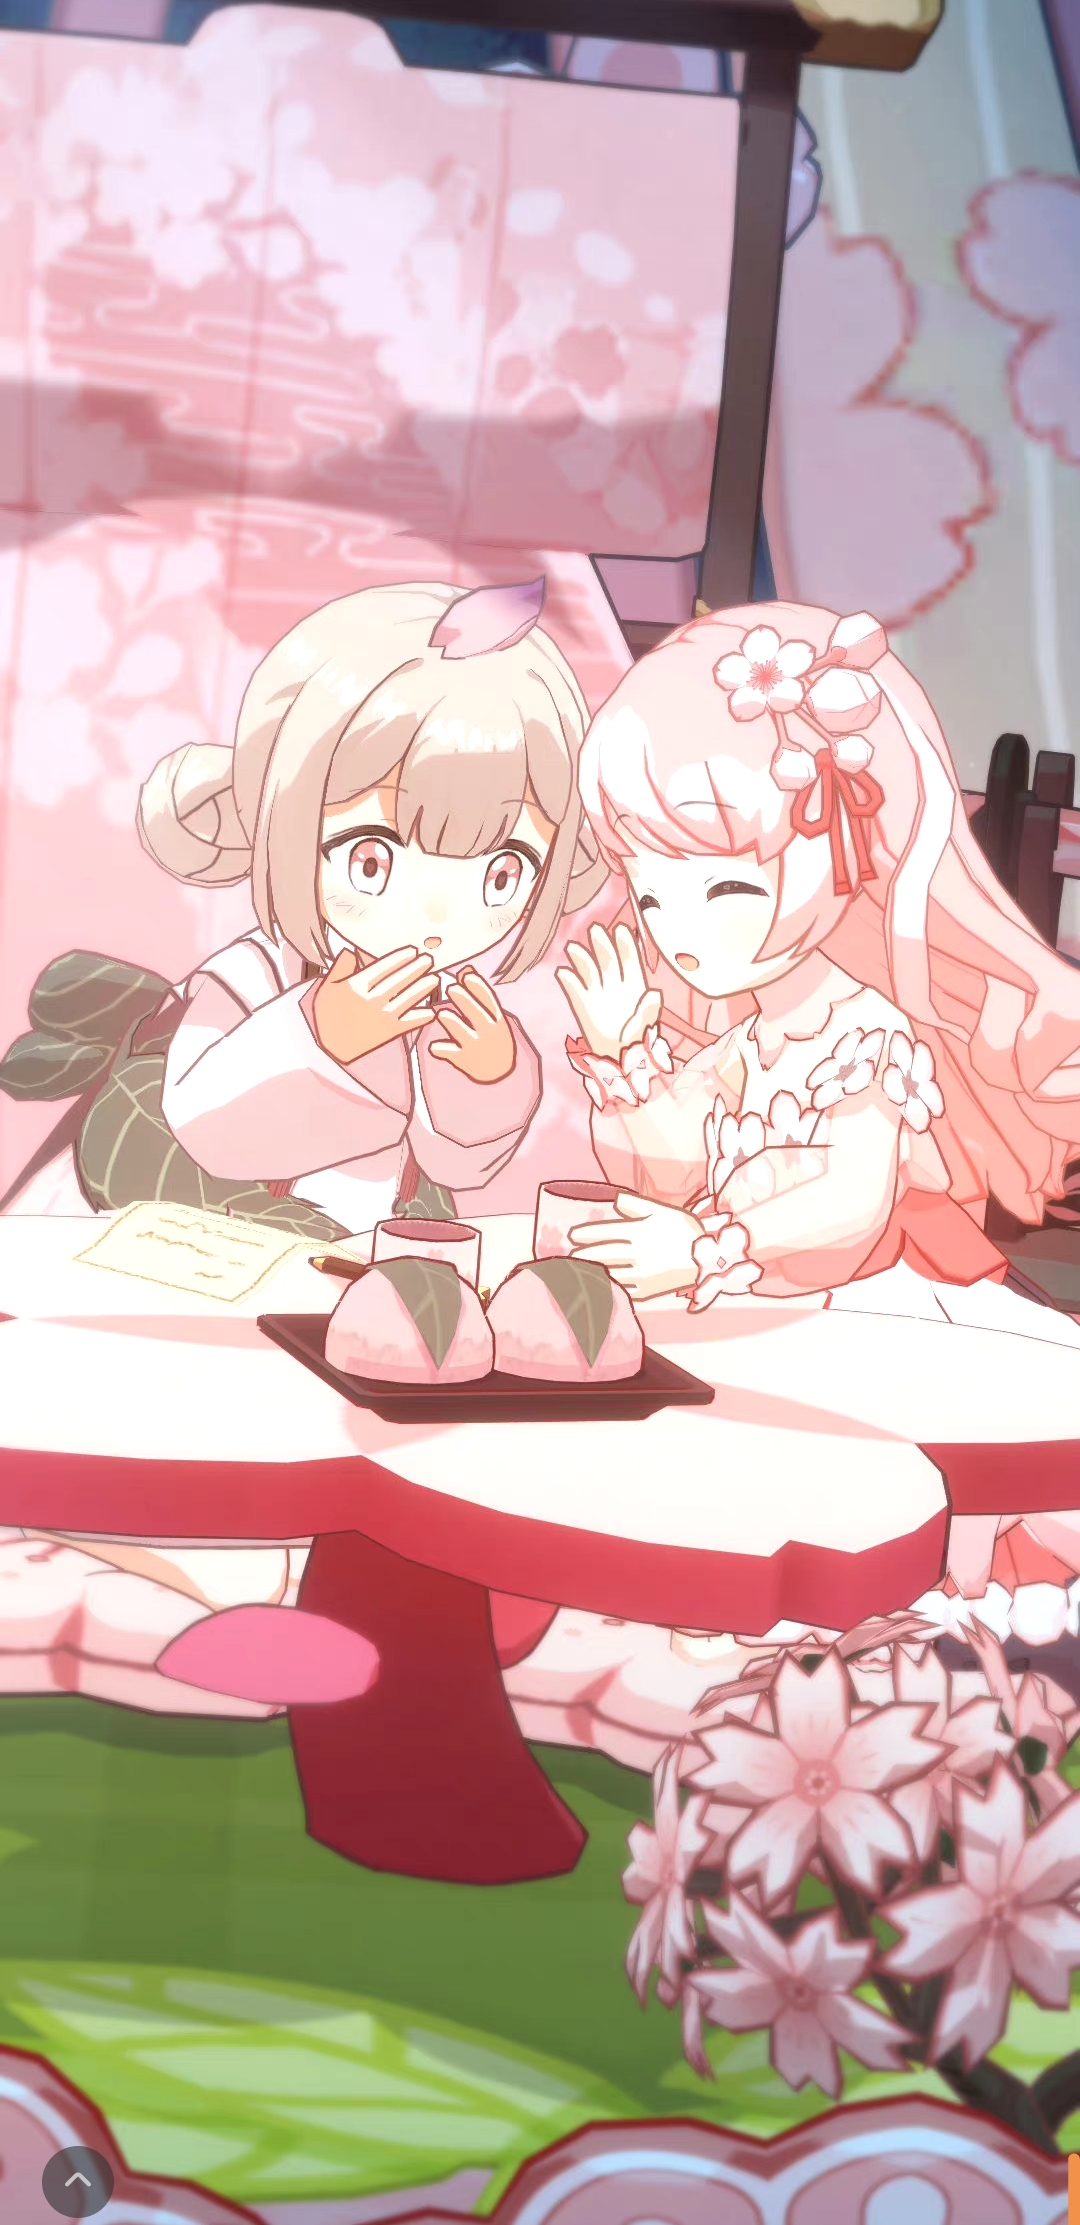 櫻花妹妹與櫻餅一起吃櫻餅.jpg